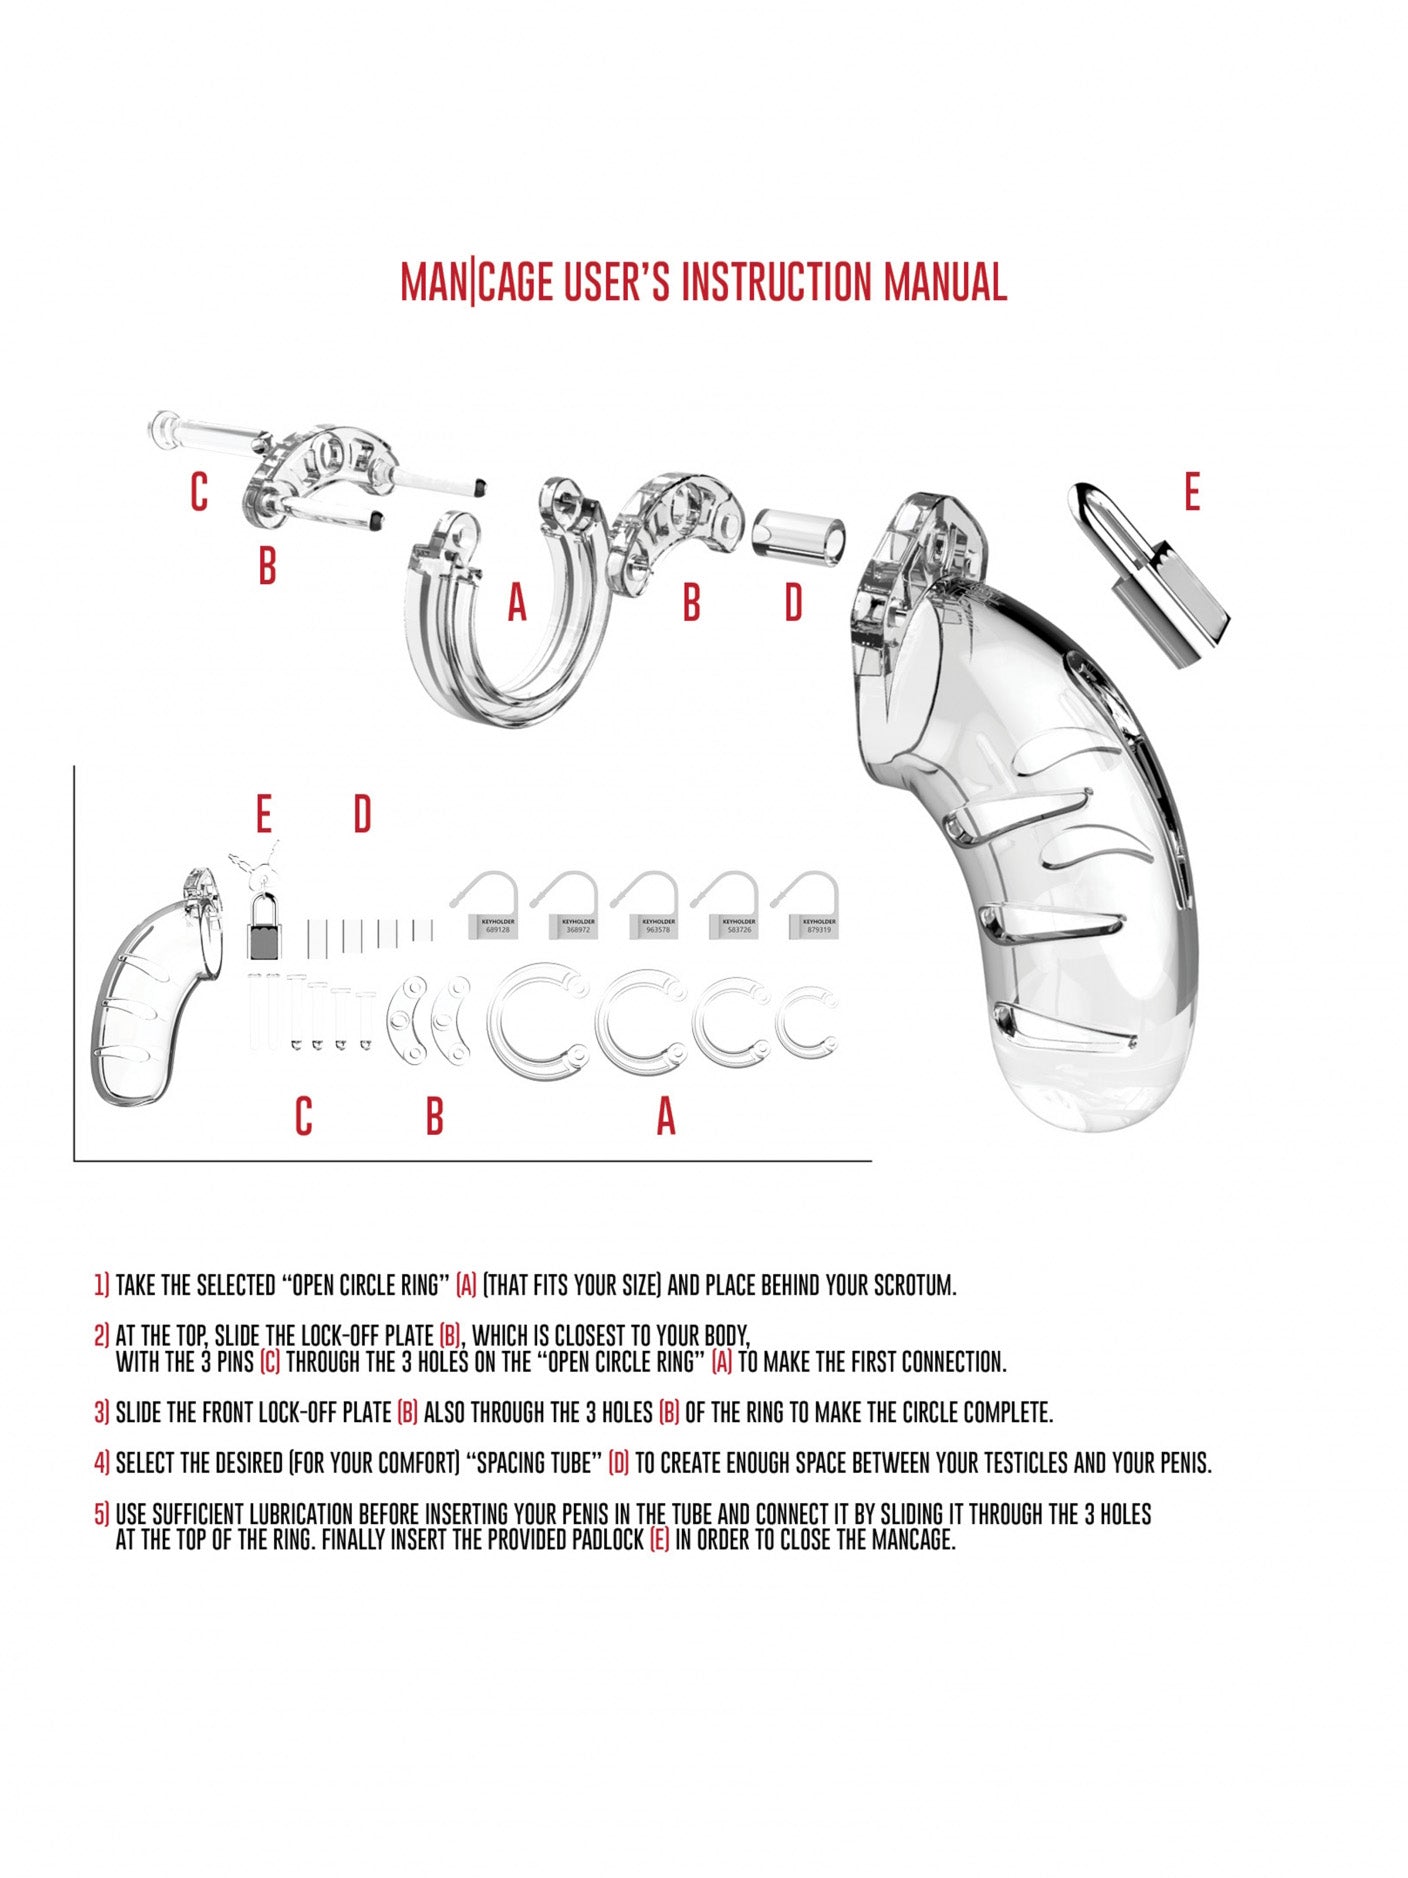 ManCage - Jaula de Castidad Modelo 02 - 3.5" / 9 cm